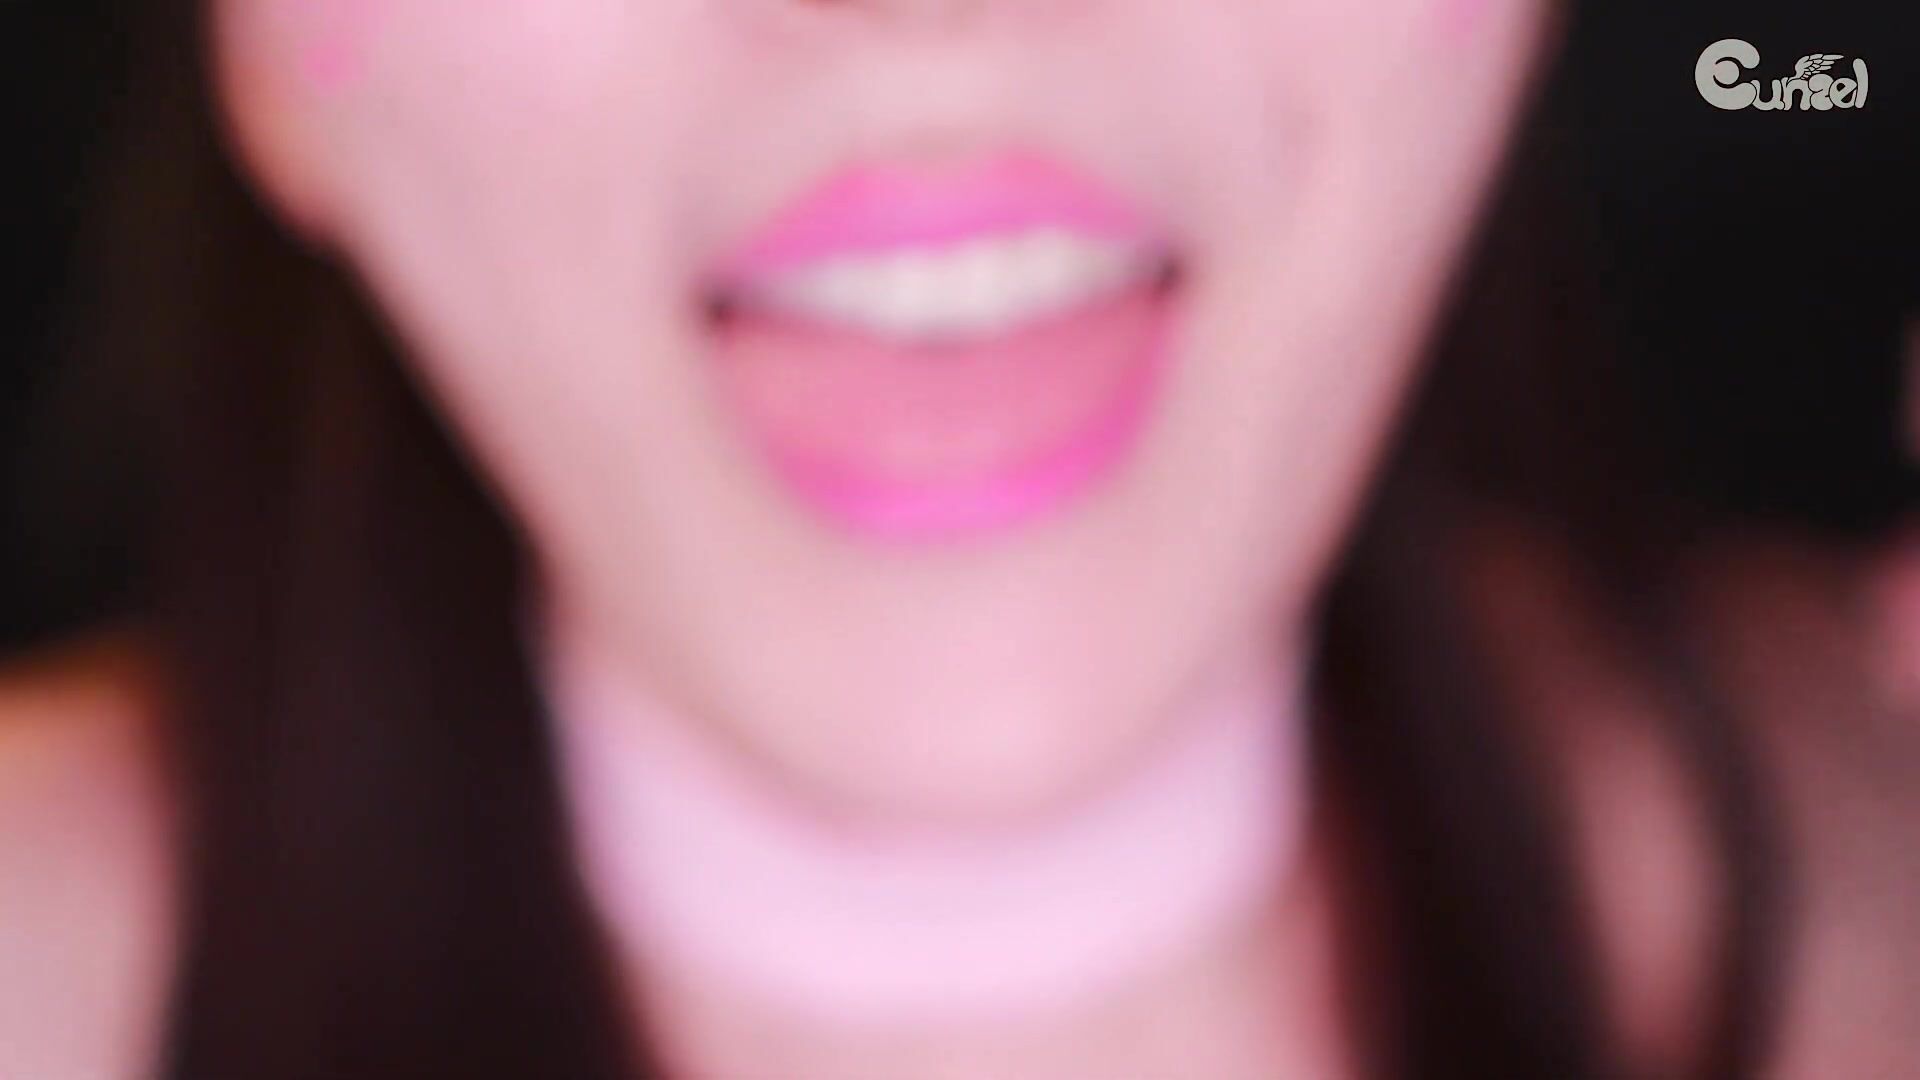 Eunzel pink lens licking